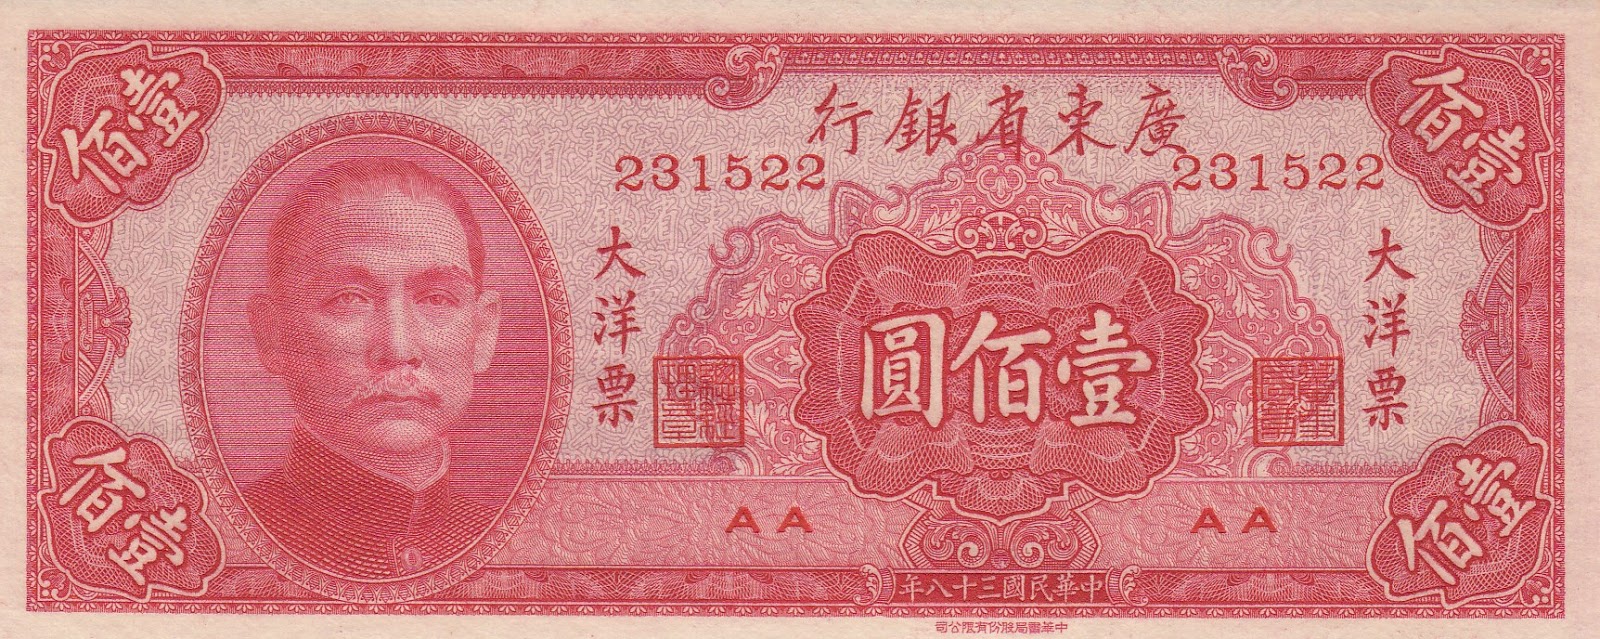 Китайские купюры. Бумажные деньги Китая. Китай 100 юаней. Китайская банкнота 1949. Китайские деньги переводить в рубли